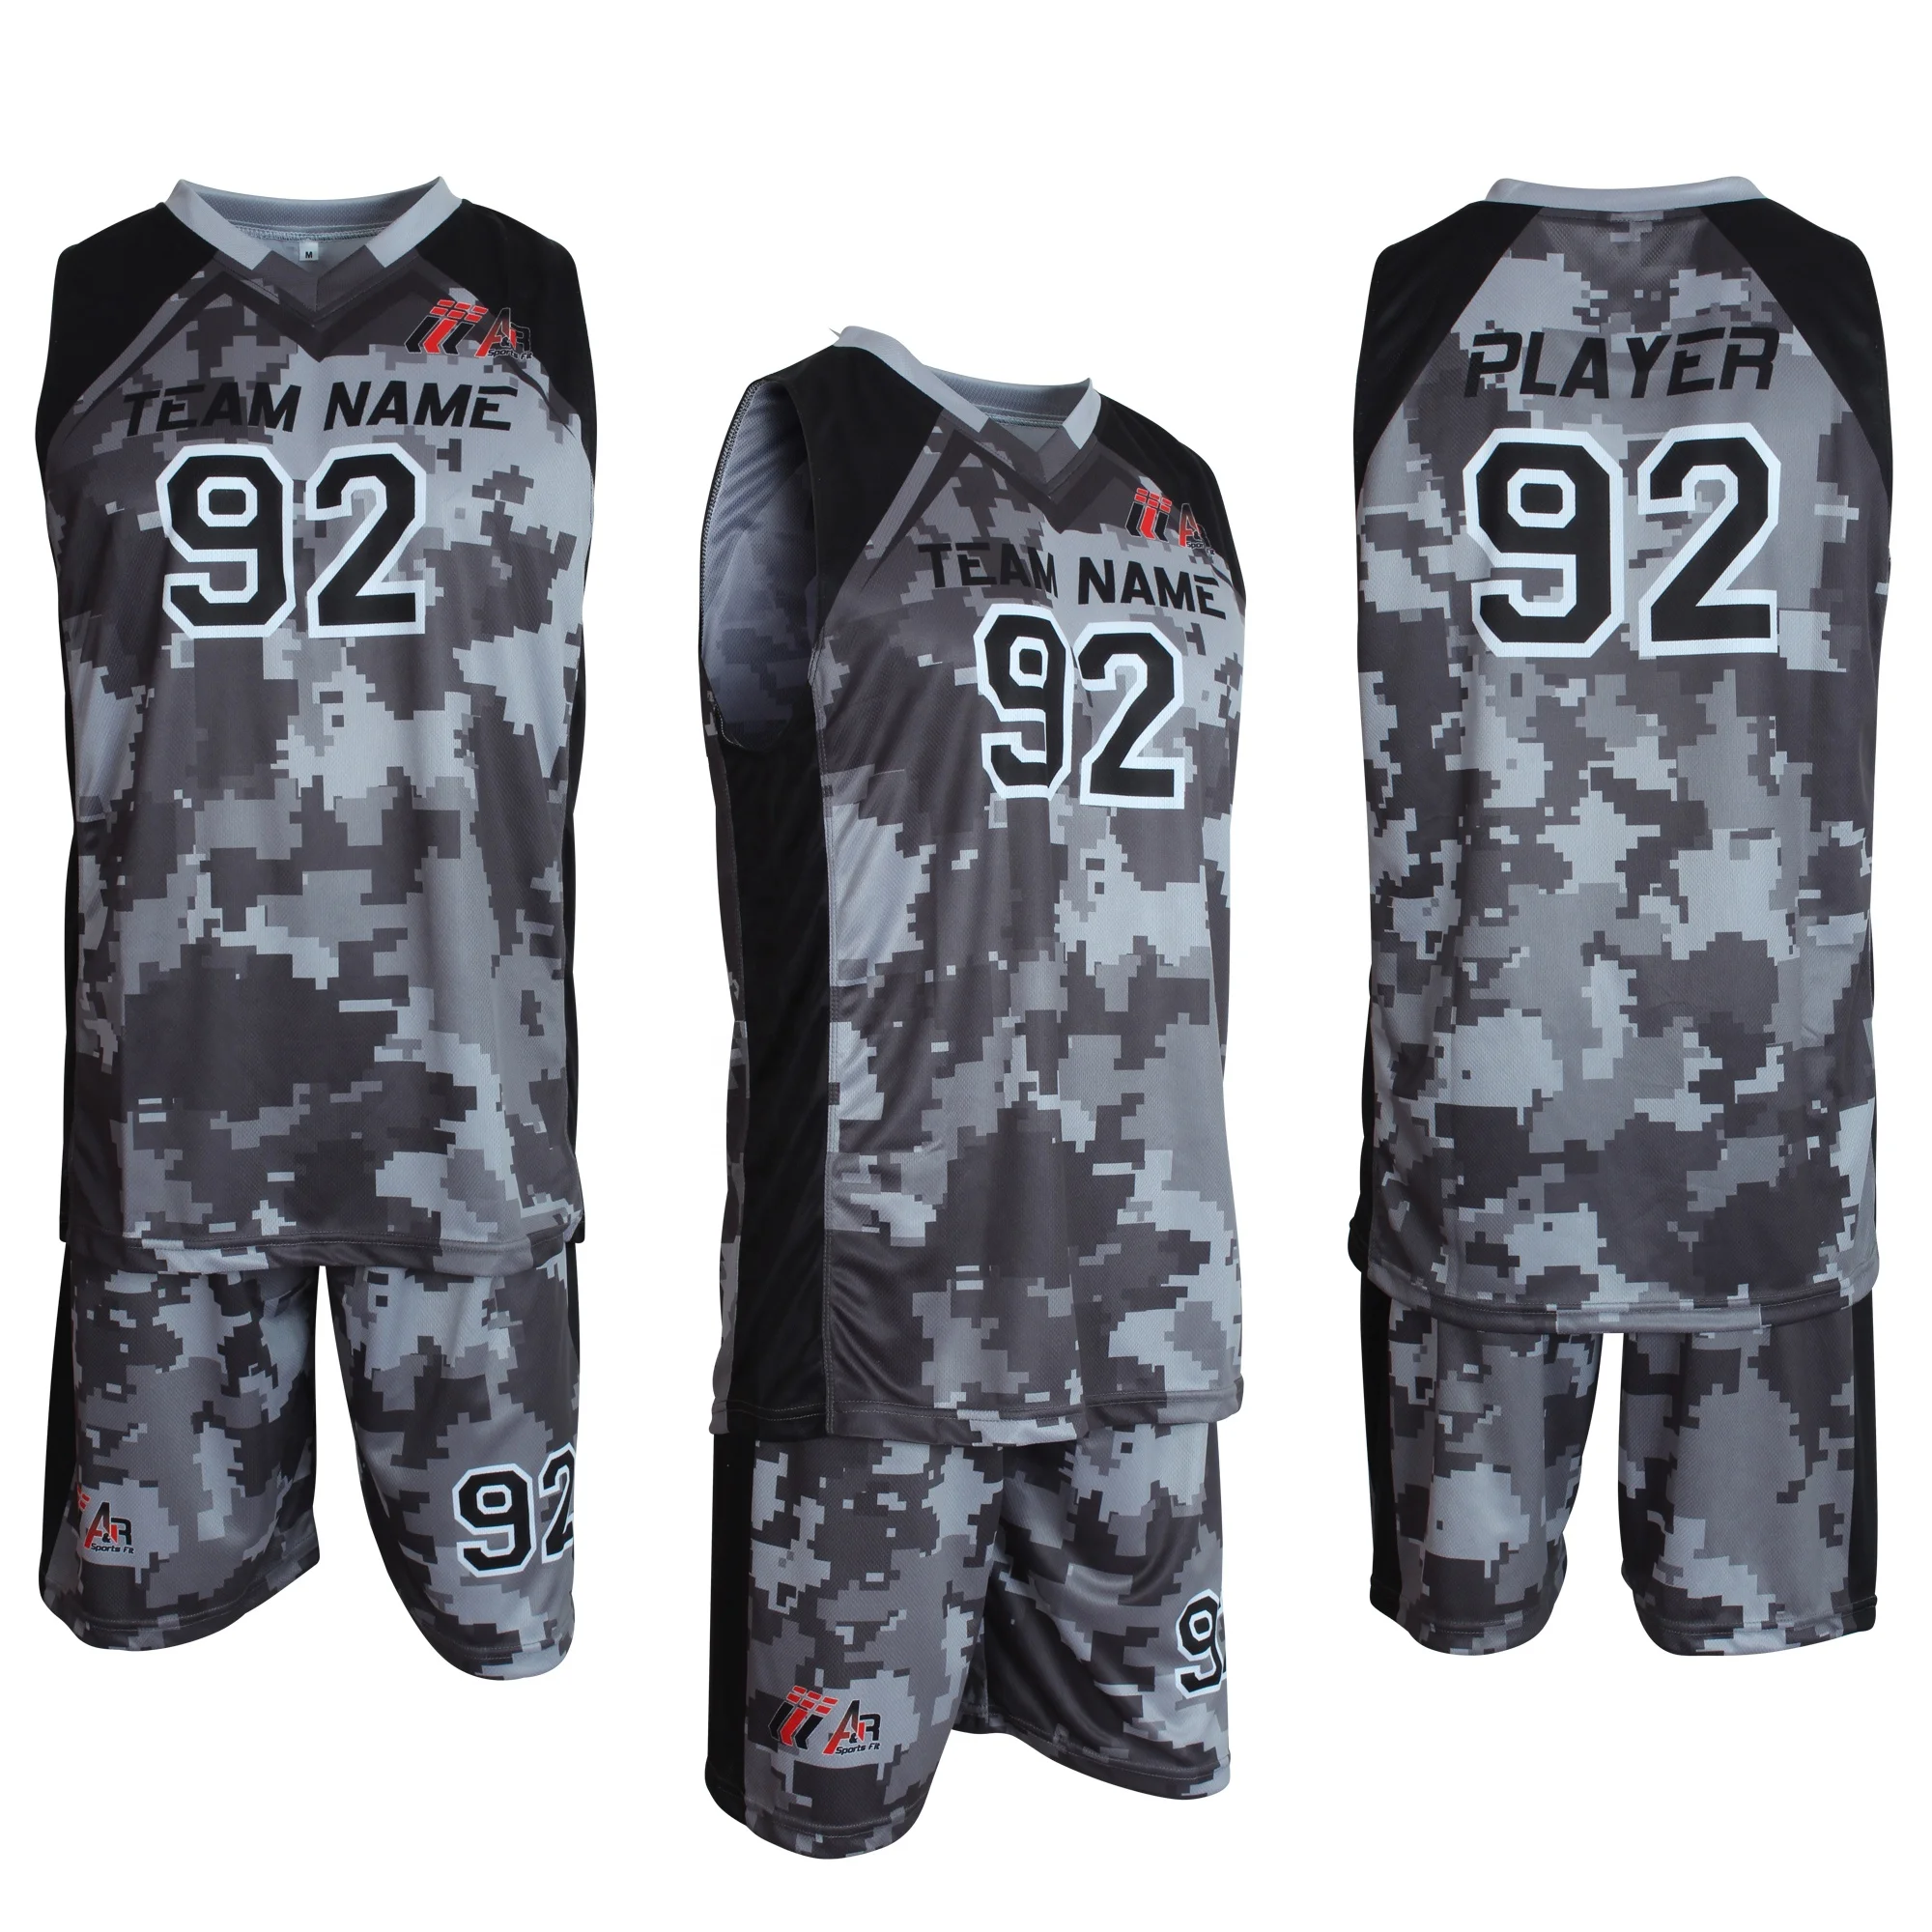 Nuevo diseño de equipo de baloncesto uniforme personalizada de color